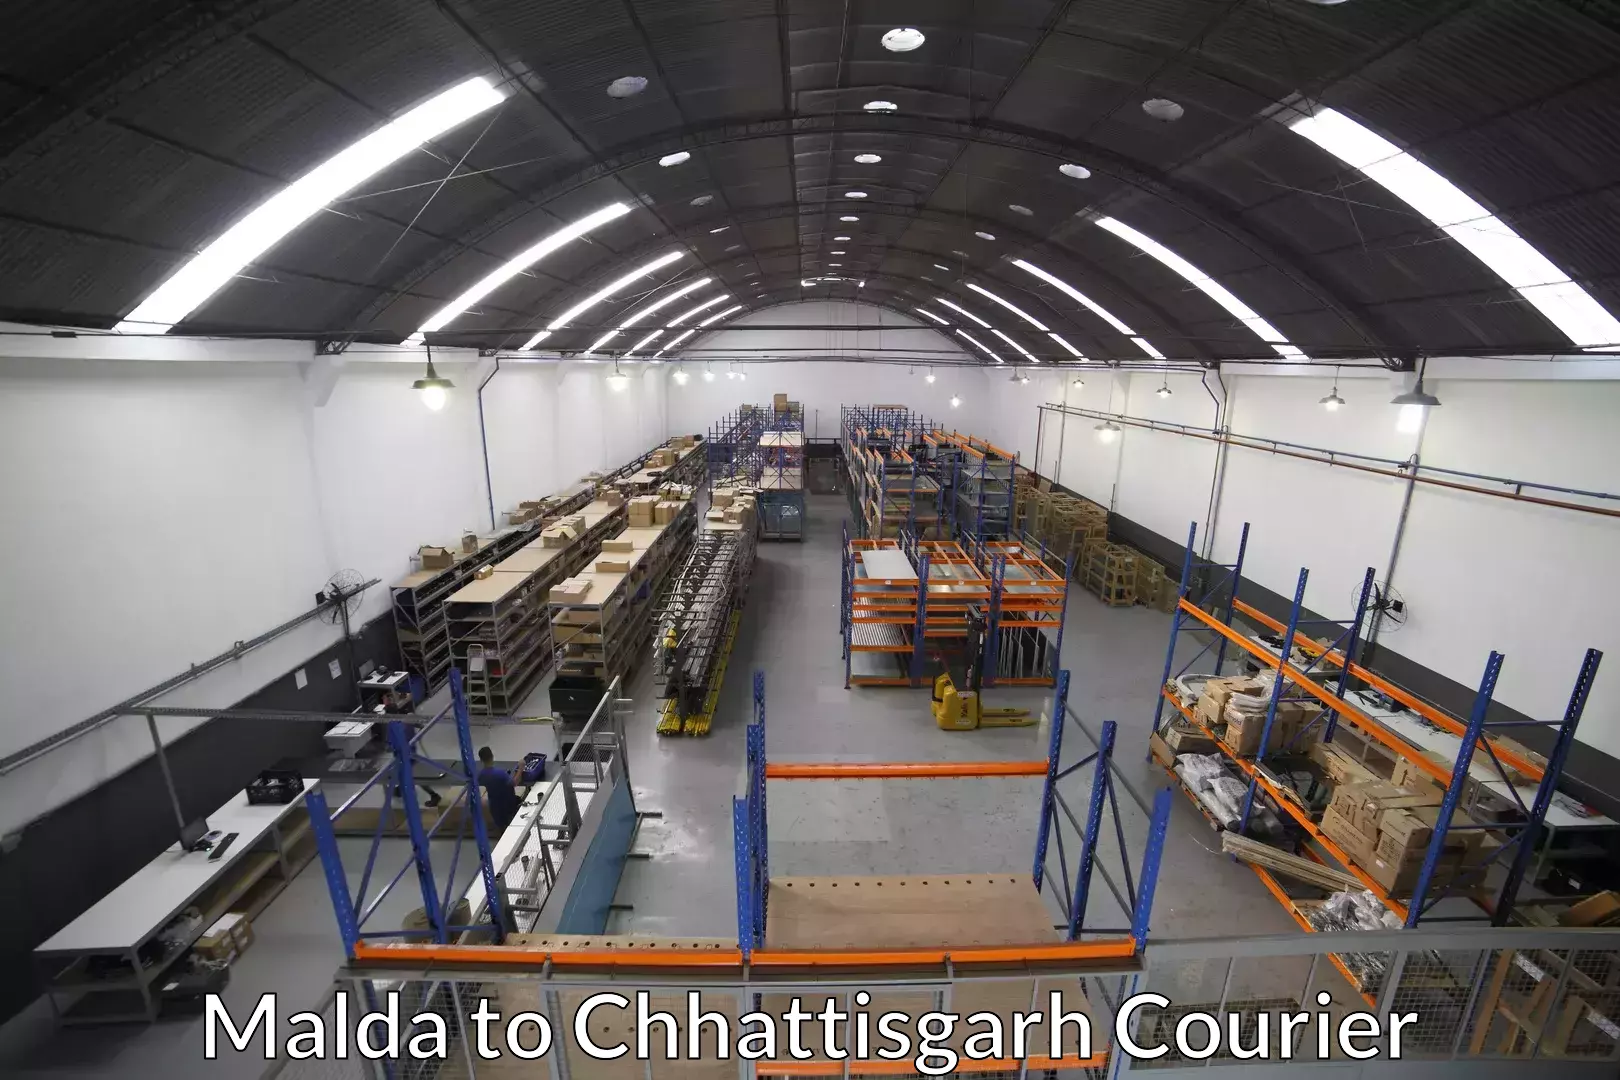 Professional furniture movers Malda to Chhattisgarh